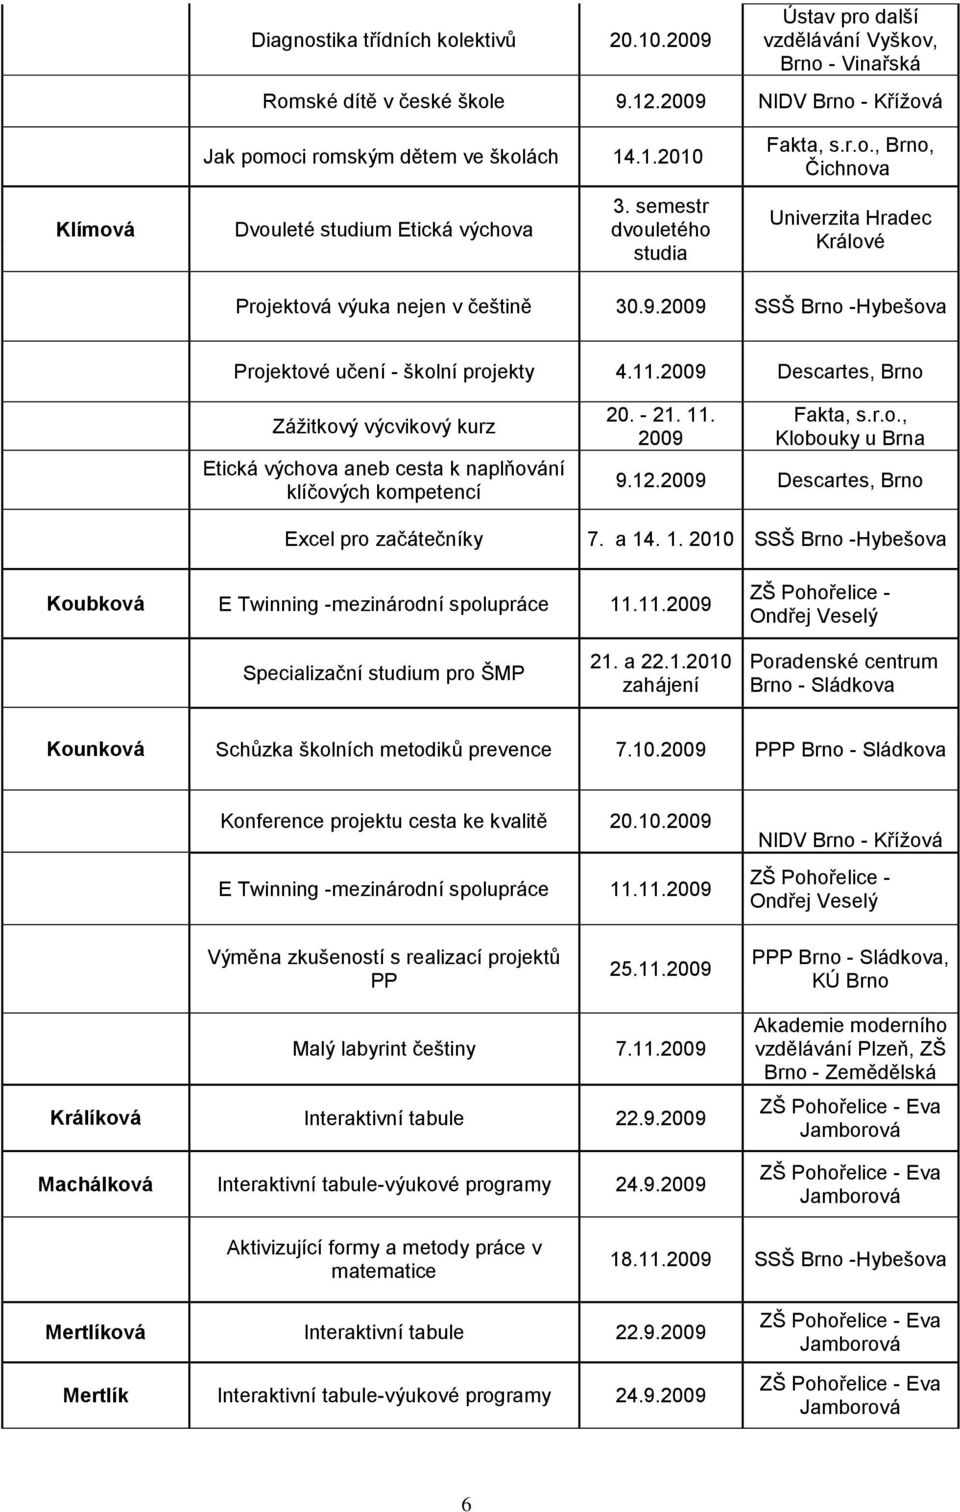 2009 Descartes, Brno Záţitkový výcvikový kurz Etická výchova aneb cesta k naplňování klíčových kompetencí Excel pro začátečníky 20. - 21. 11. 2009 Fakta, s.r.o., Klobouky u Brna 9.12.